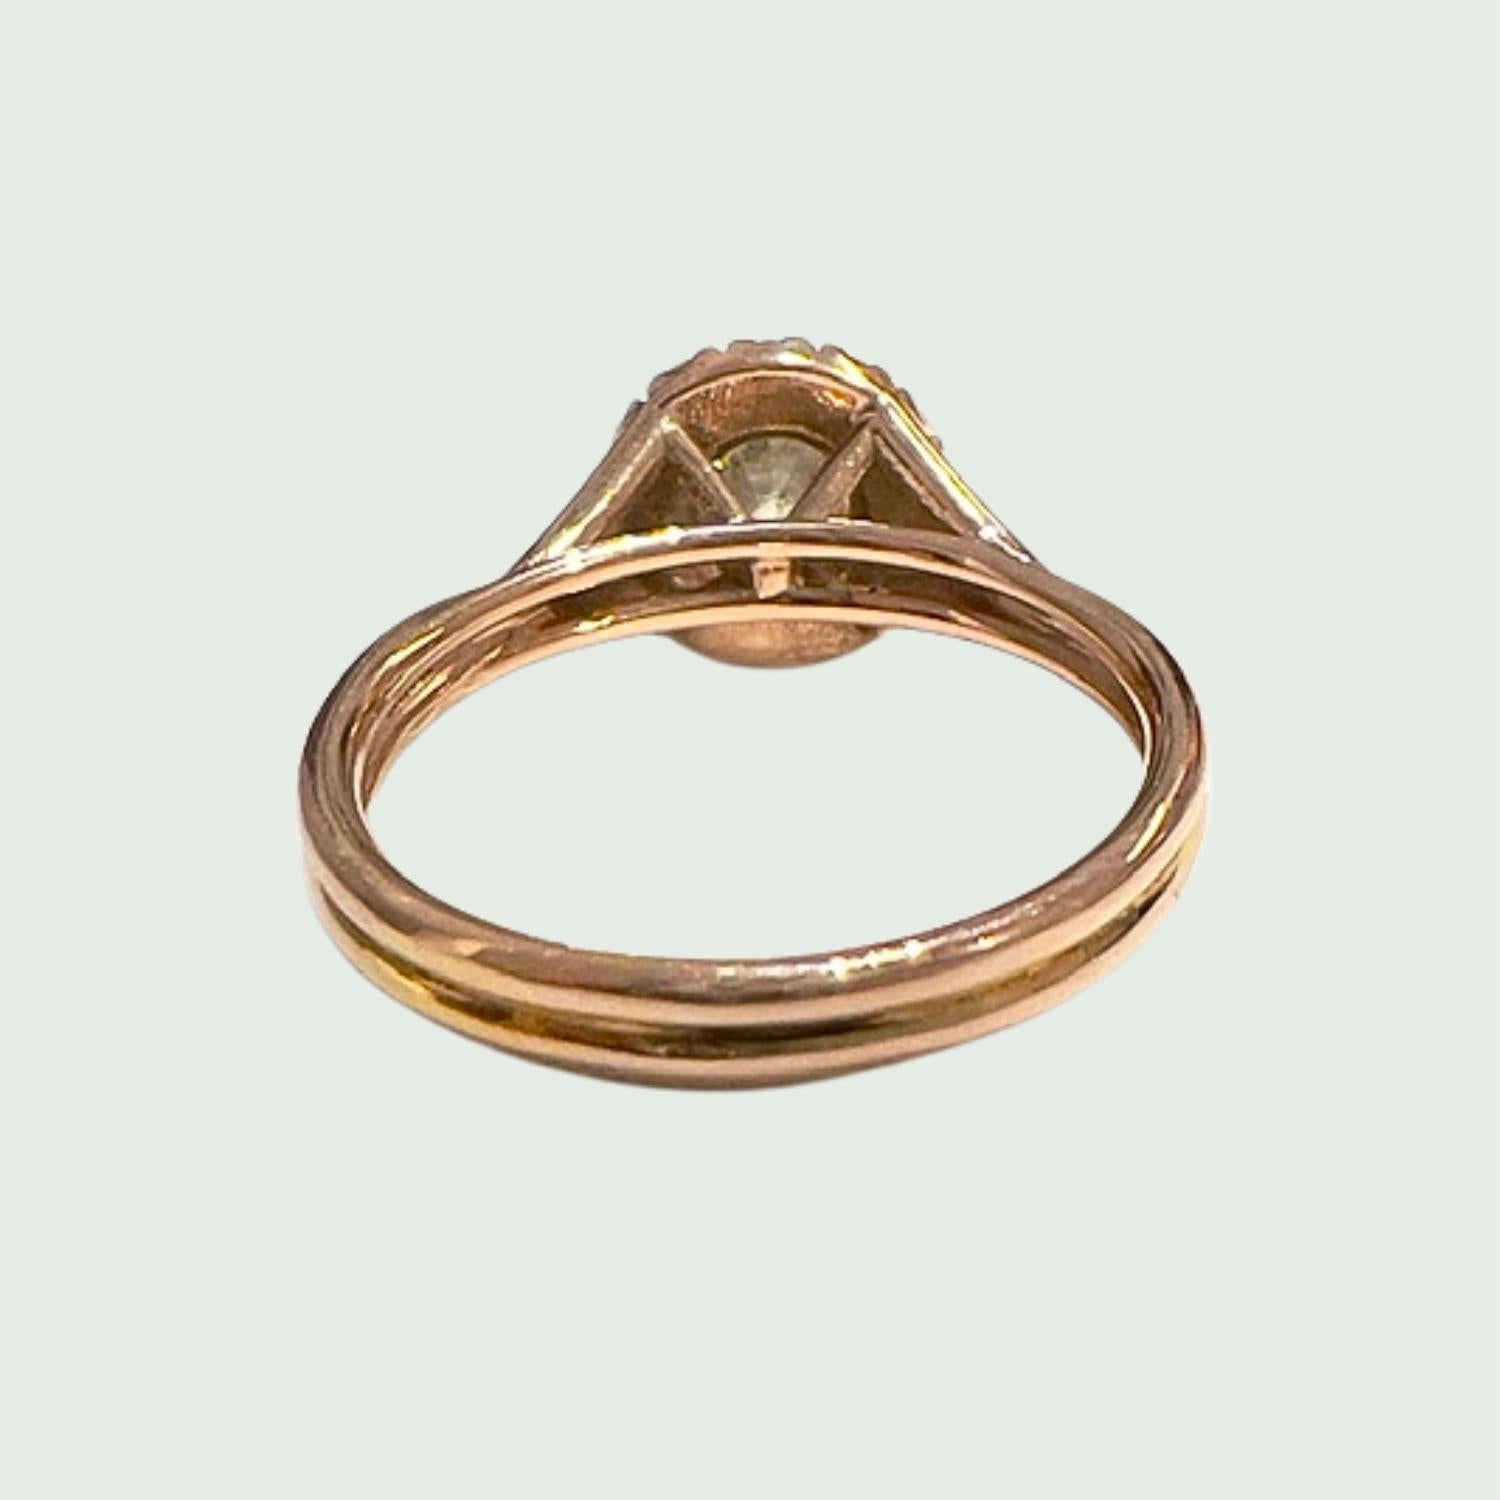 Brilliant Cut Contemporary Design Brilliant-Cut Diamond 18K Yellow Gold Ring  For Sale